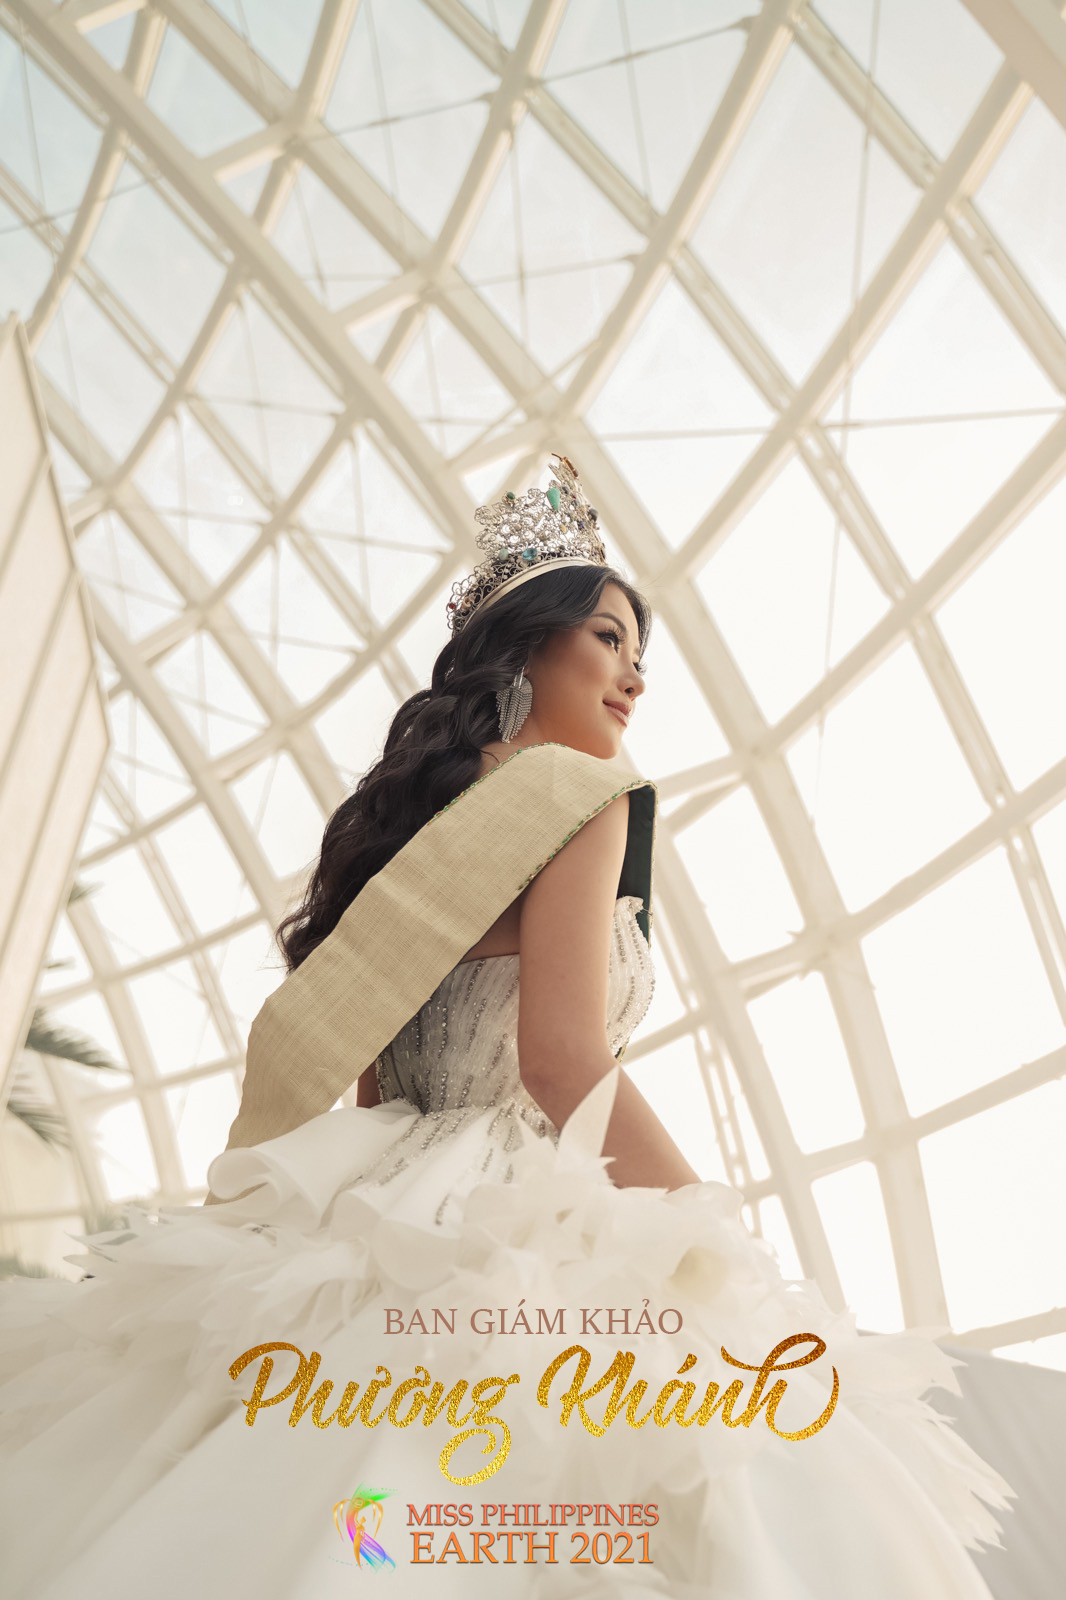 Hoa hậu Phương Khánh sẽ được mời vào vị trí ban giám khảo cuộc thi Miss Earth Philippines 2021